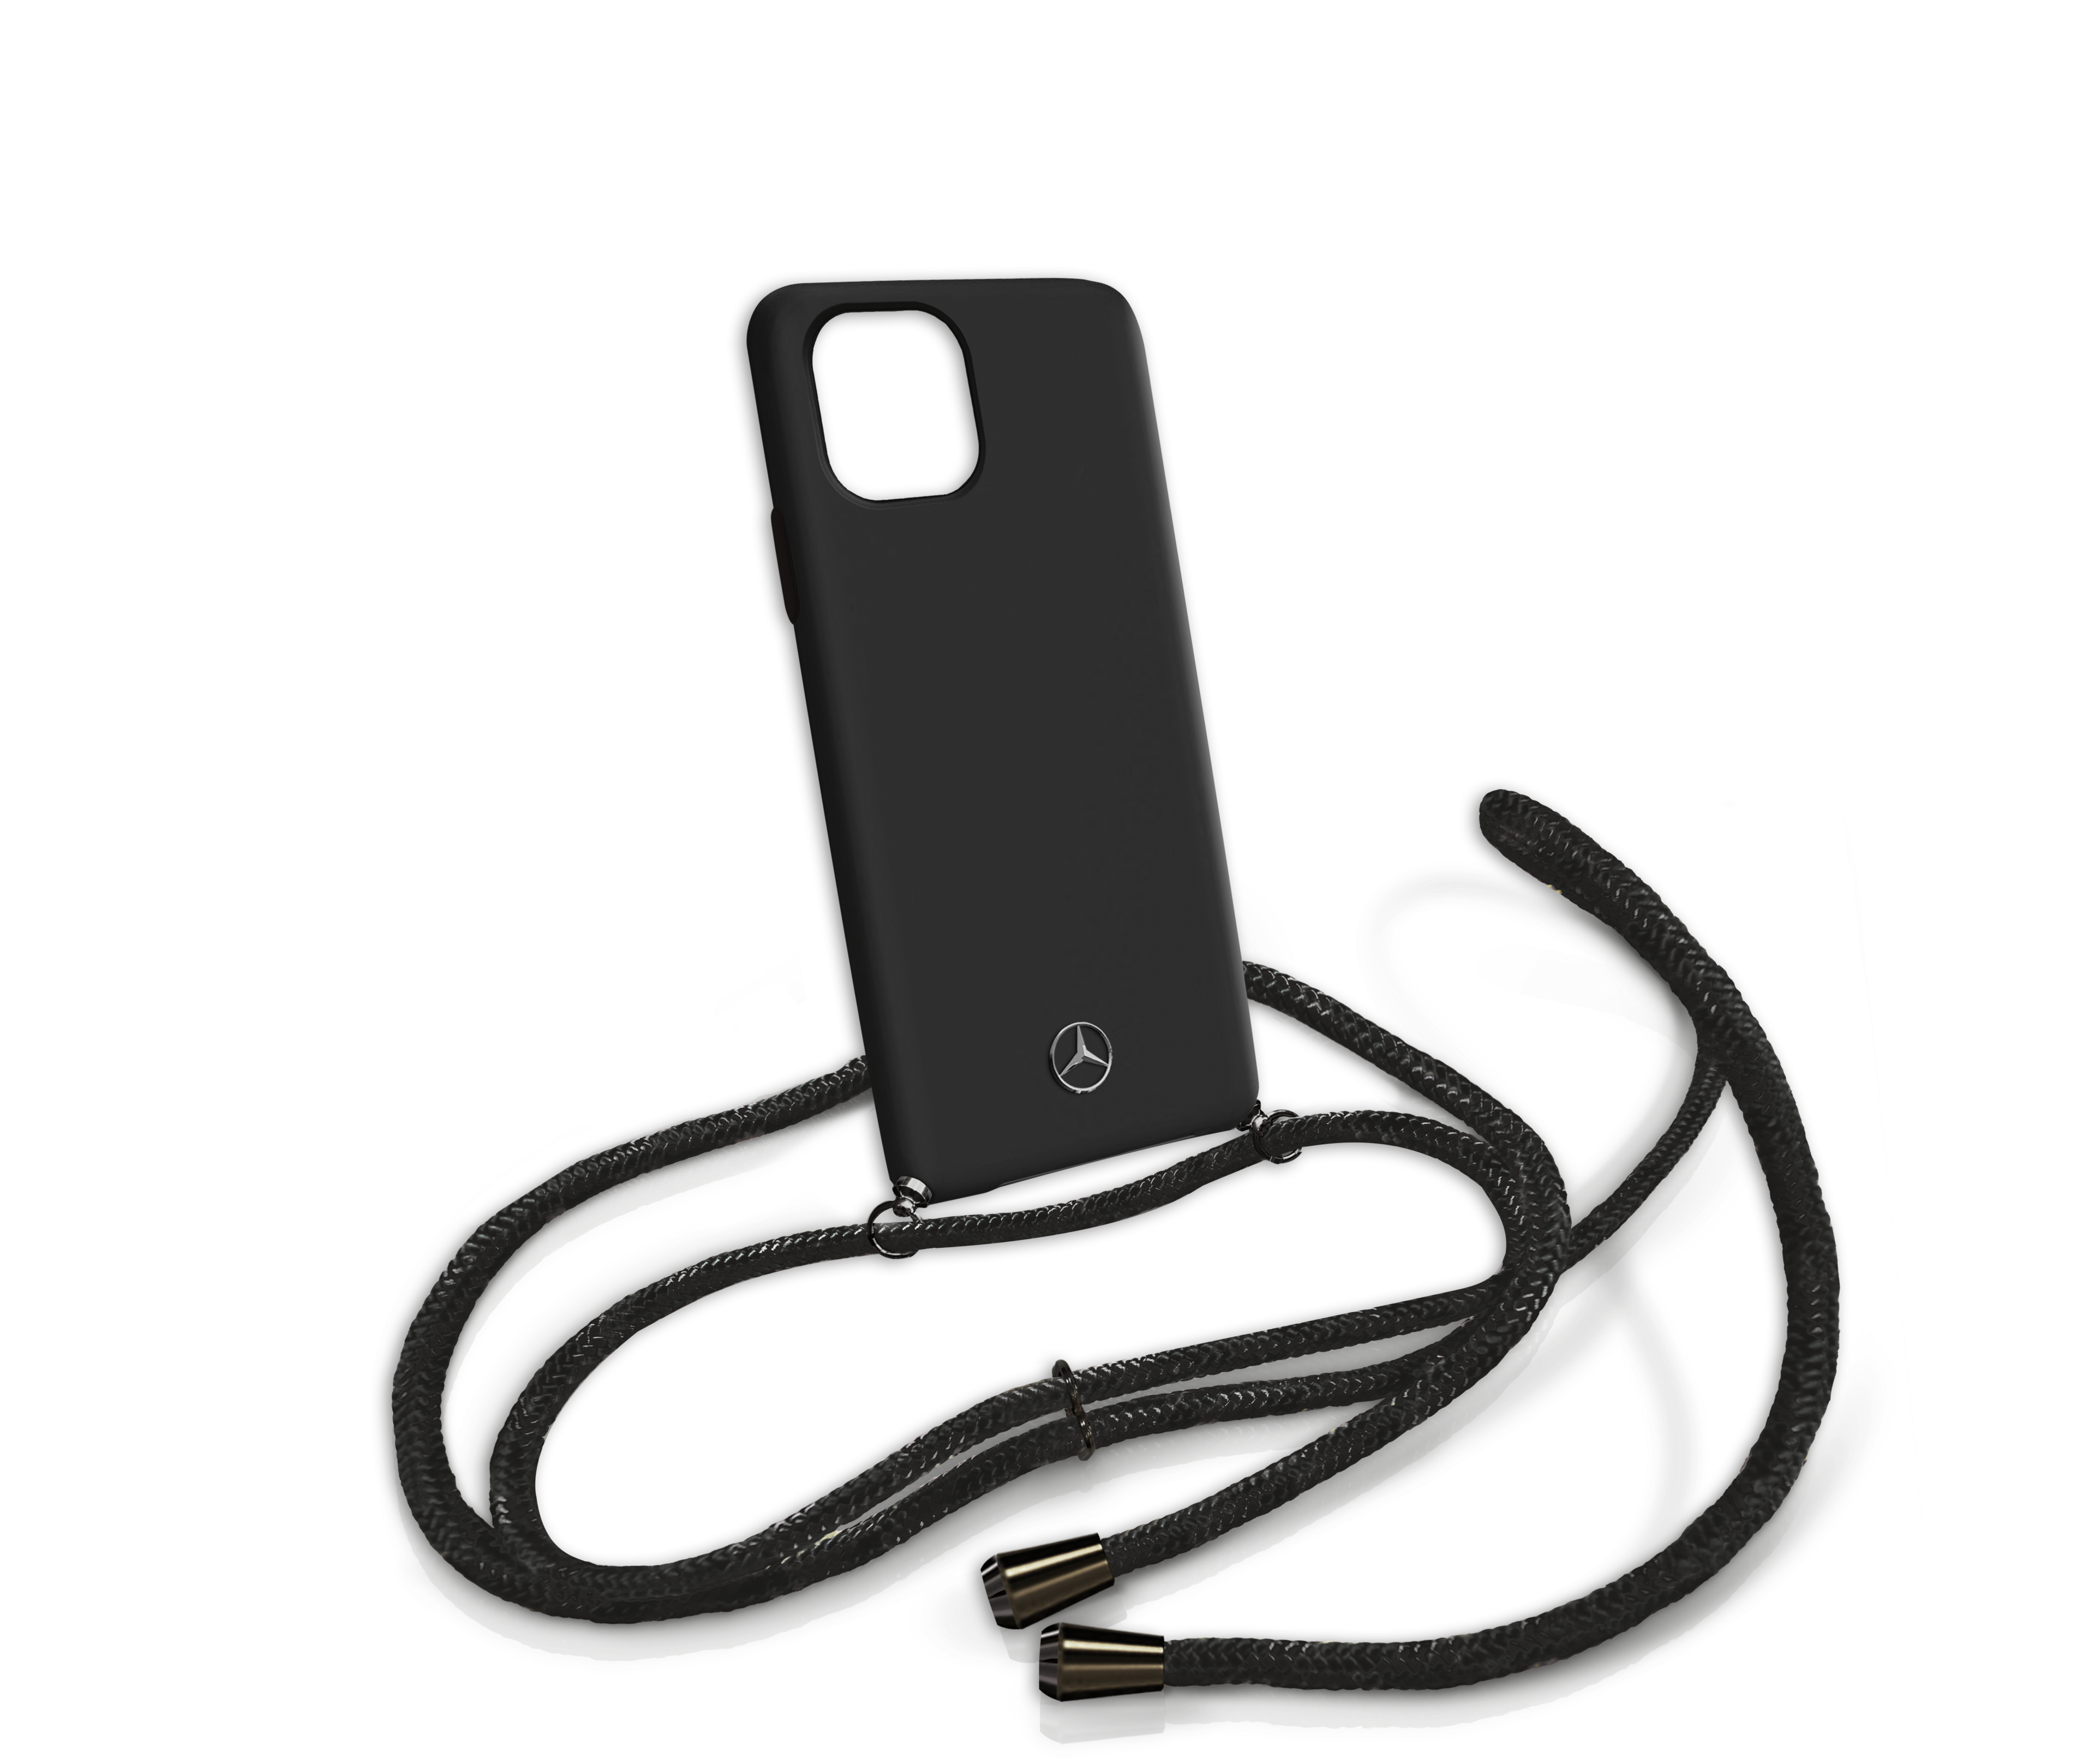 Hülle für iPhone® 11 Pro mit Kette - schwarz, Polycarbonat / TPU / Polyester